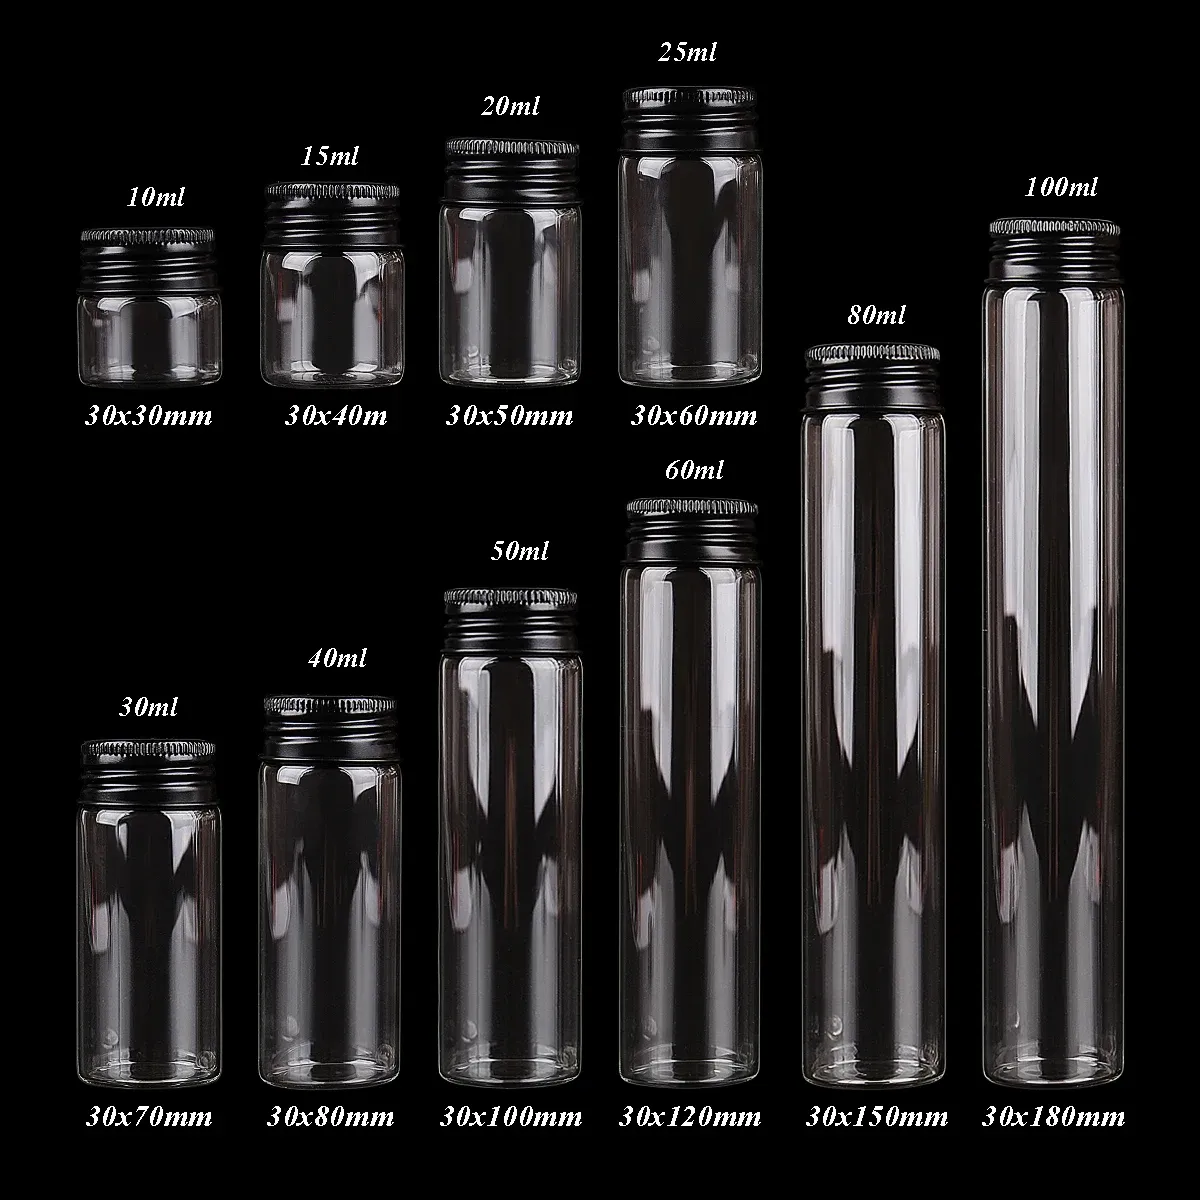 Potten 24 stuks 10ml100ml glazen flessen met zwarte aluminium doppen Kruidkruik Glazen containers Decoratieve flessen voor bruiloft ambacht DIY cadeau